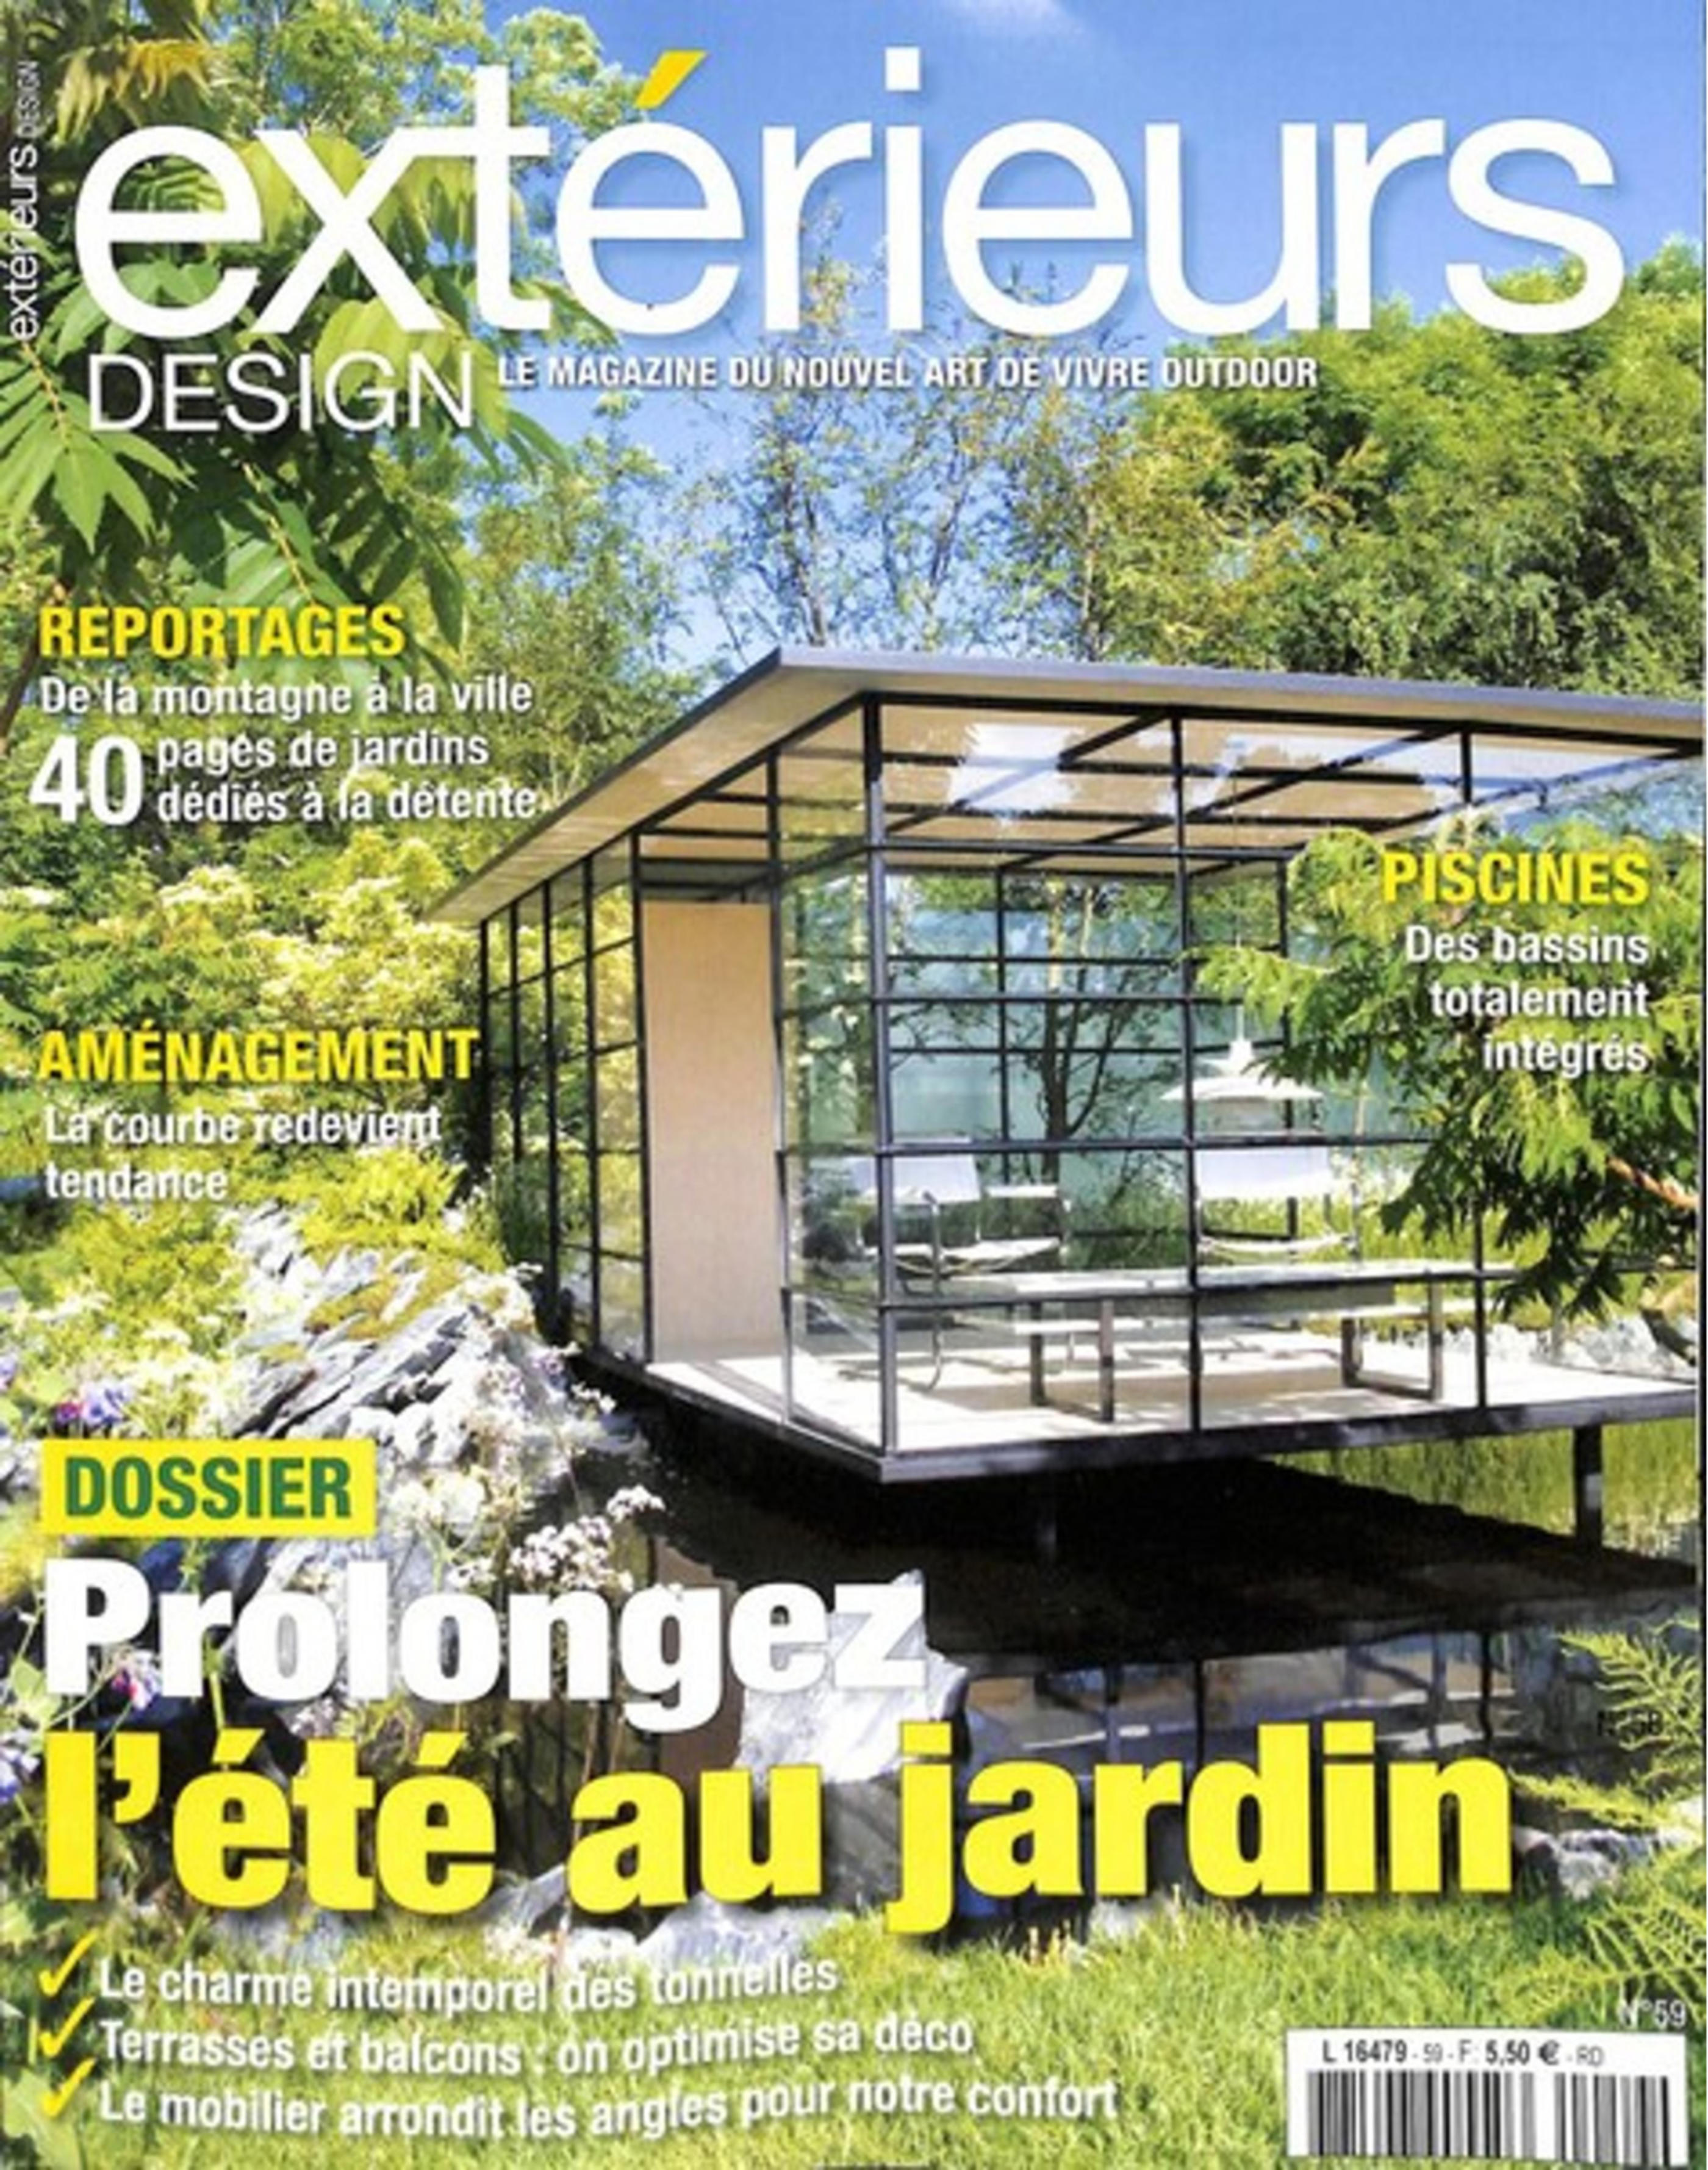 Sacoche plancha Jean Dubost Pradel, Extérieur Design Magazine Septembre 2017